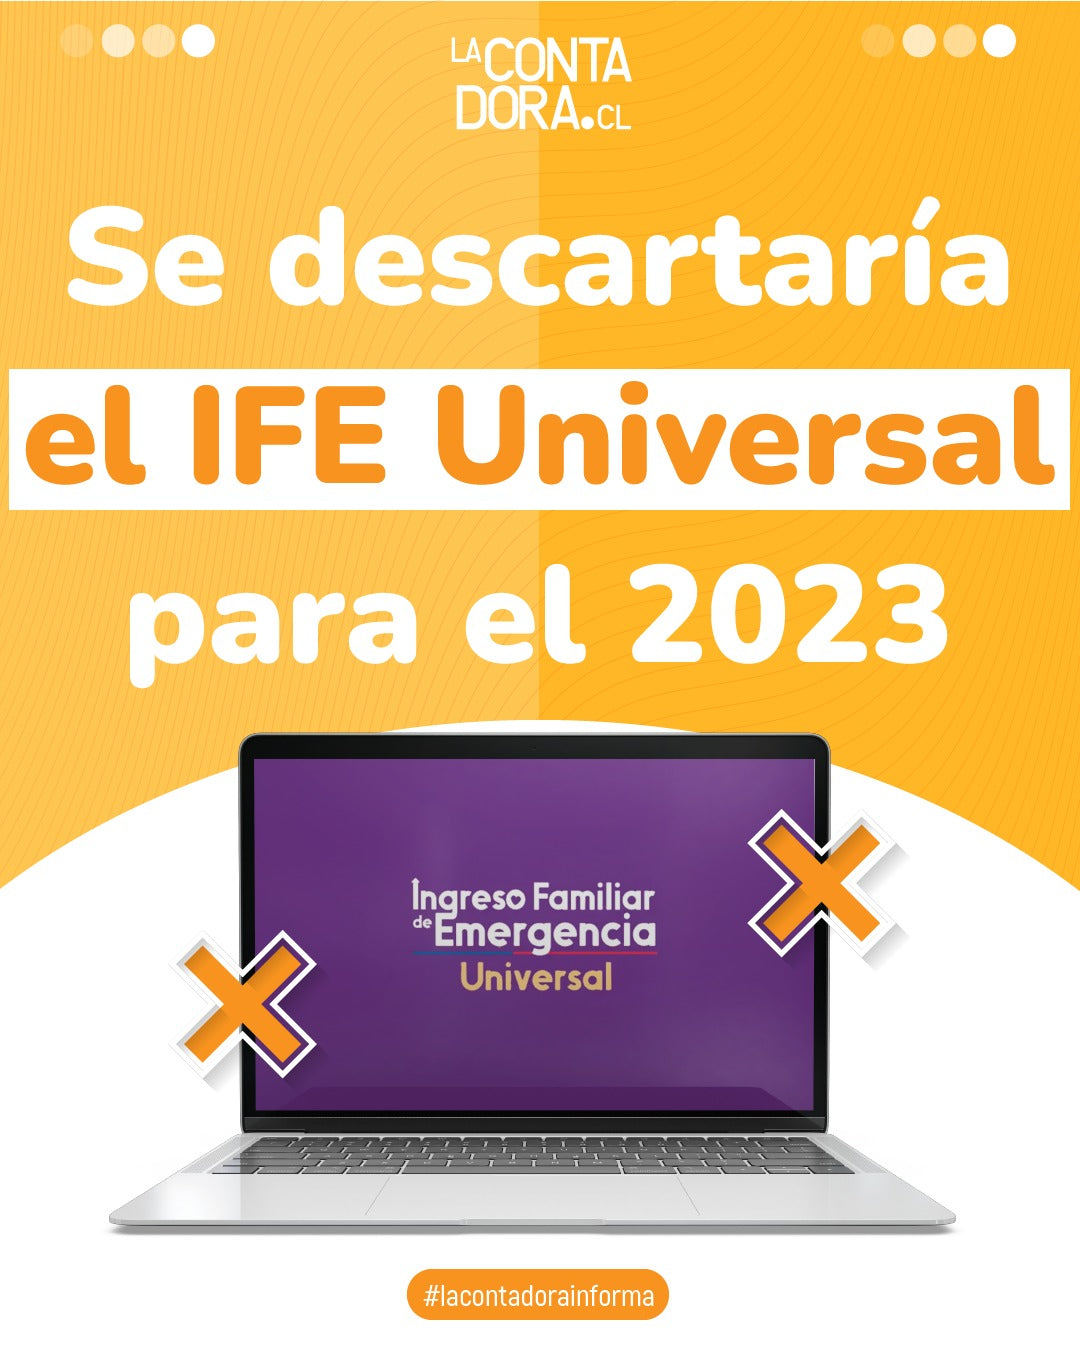 SE DESCARTARÍA EL IFE UNIVERSAL PARA EL 2023